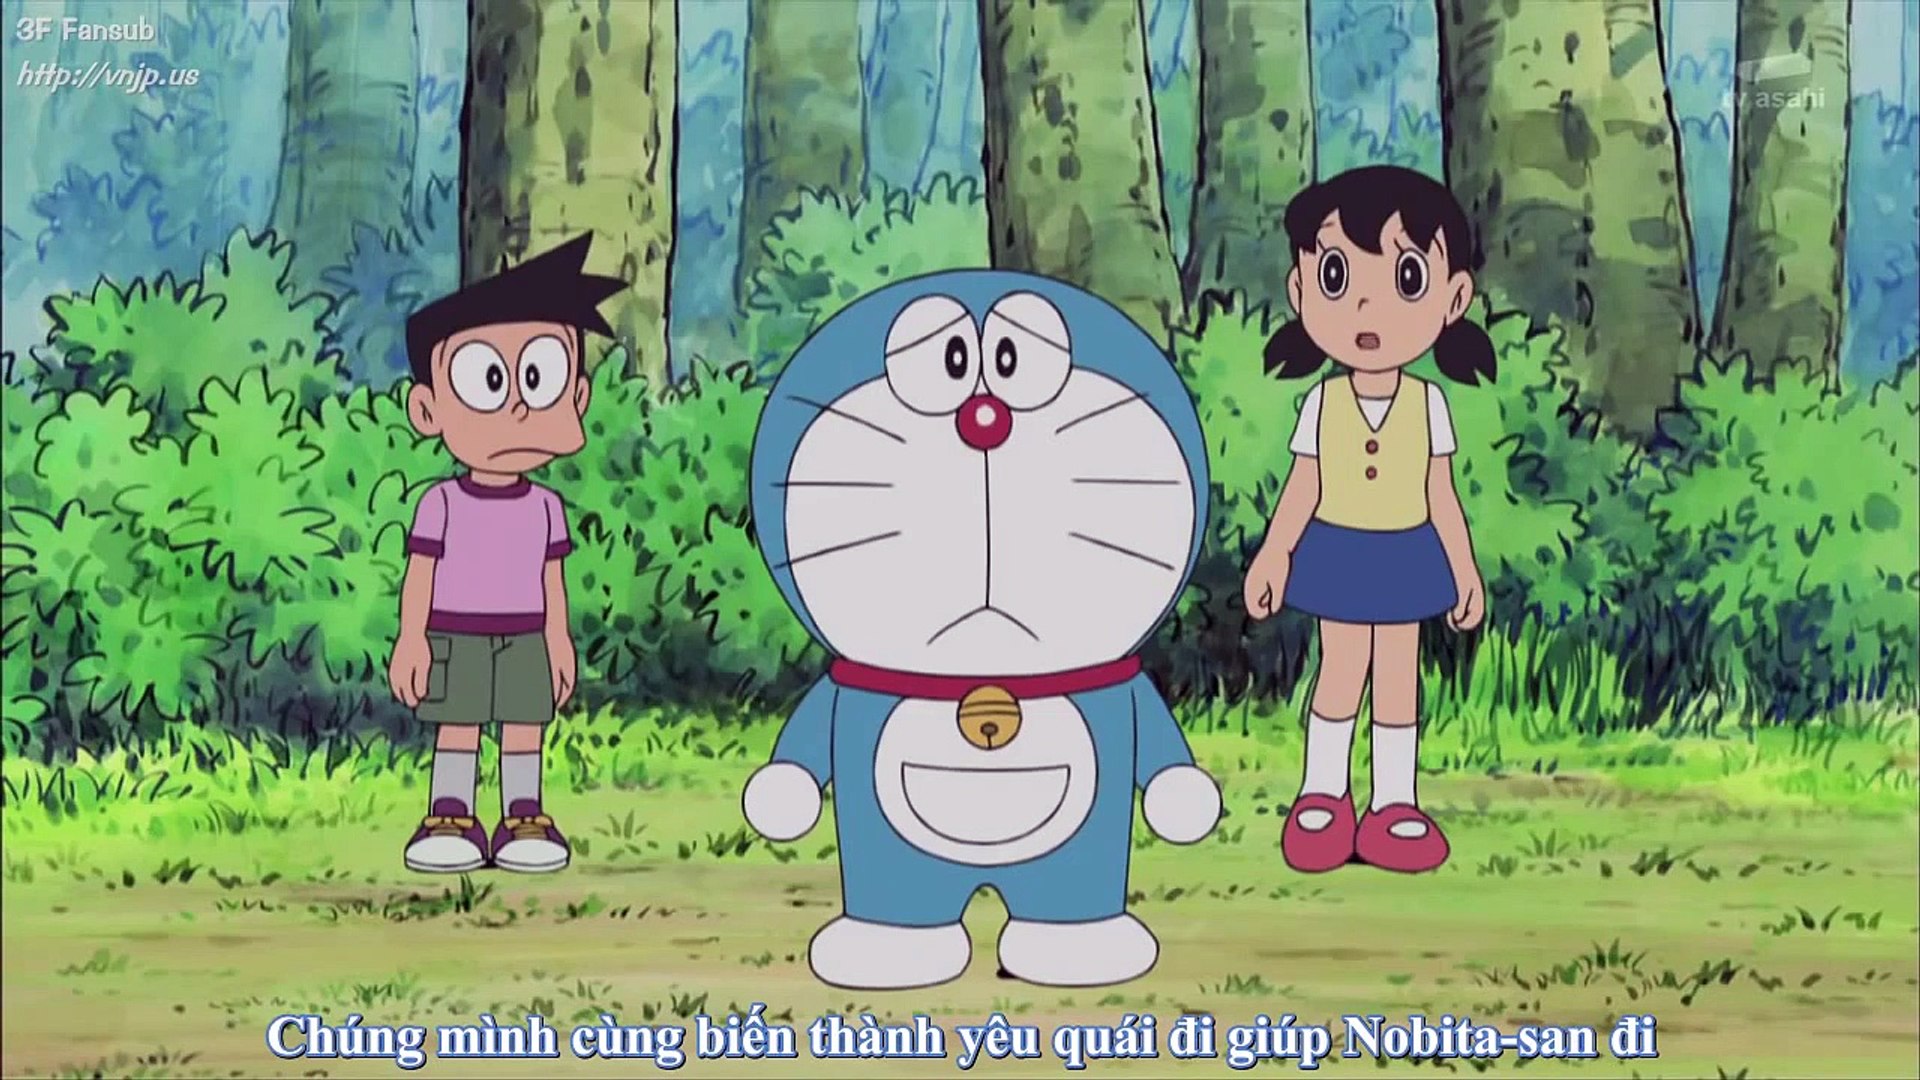 ドラえもん Doraemon Ep 302 決戦 ジャイアンvsオバケ軍団 世界記ロック Video Dailymotion